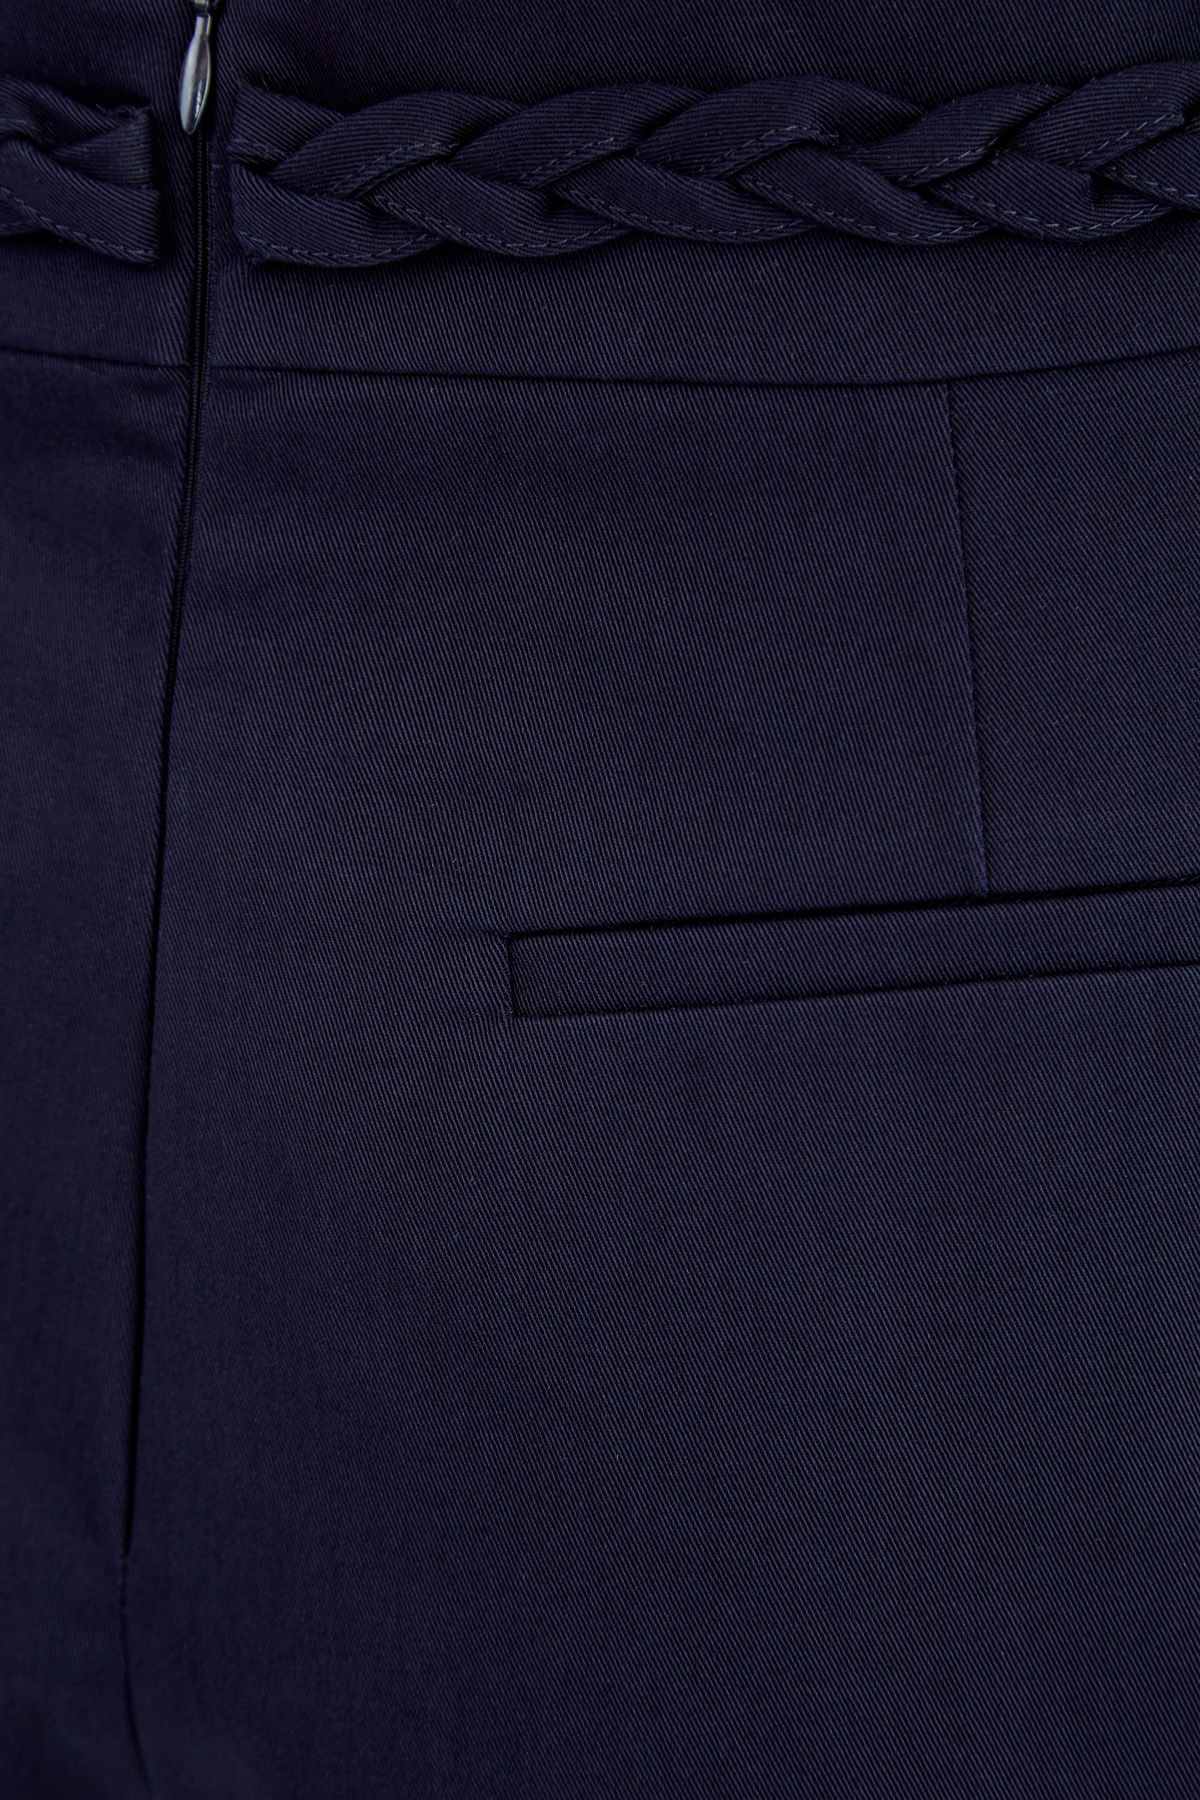 Шорты в стиле чинос на высокой посадке с плетеной отделкой REDVALENTINO, цвет синий, размер 46 - фото 6